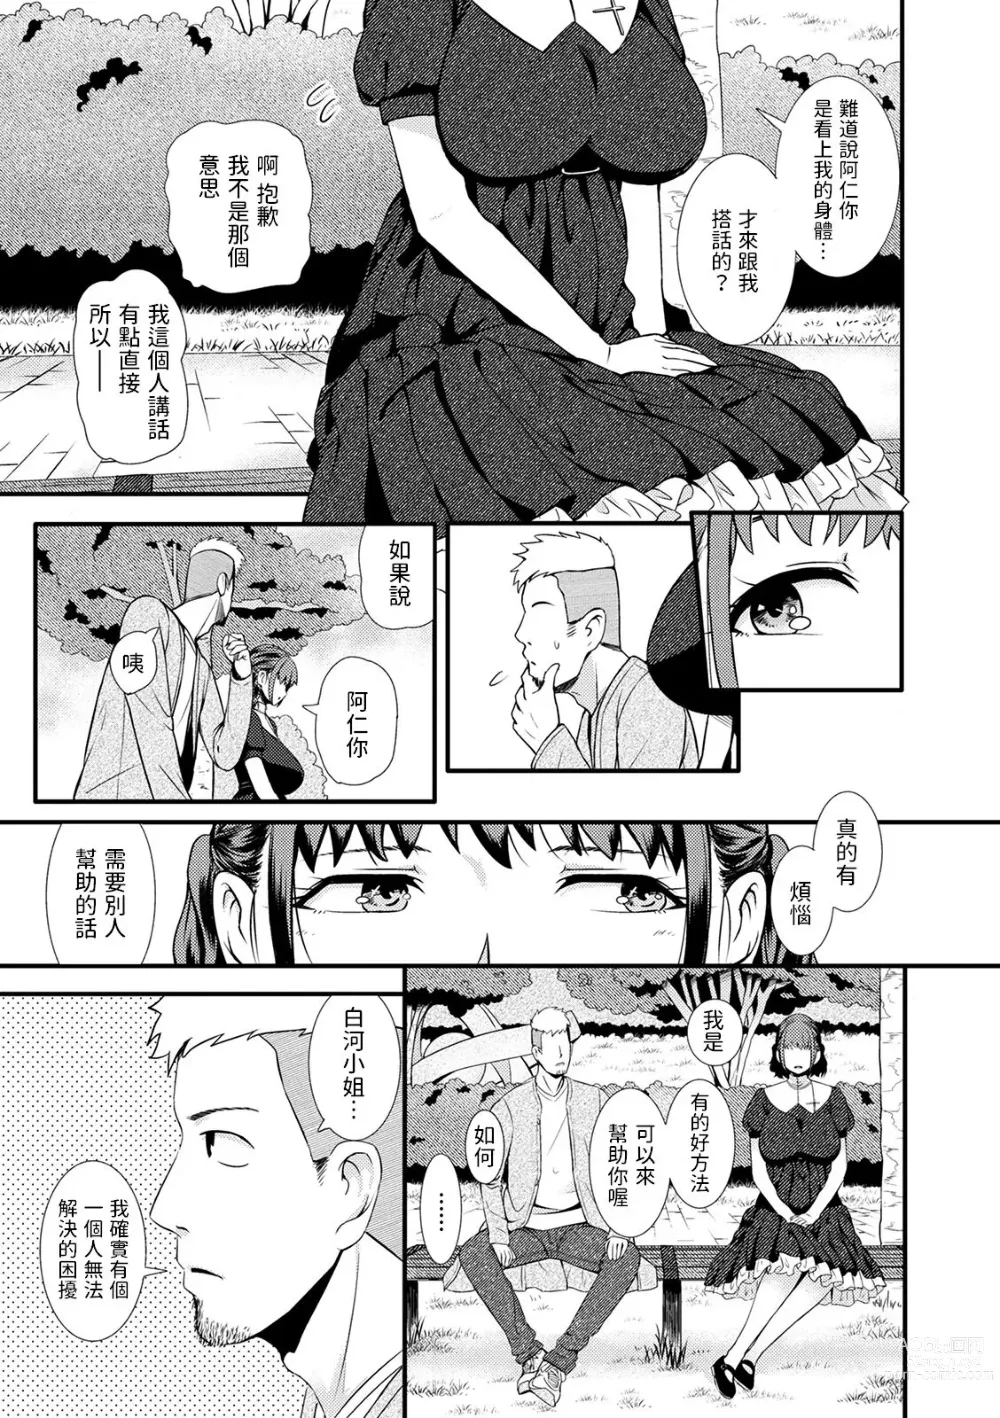 Page 3 of manga Therapist